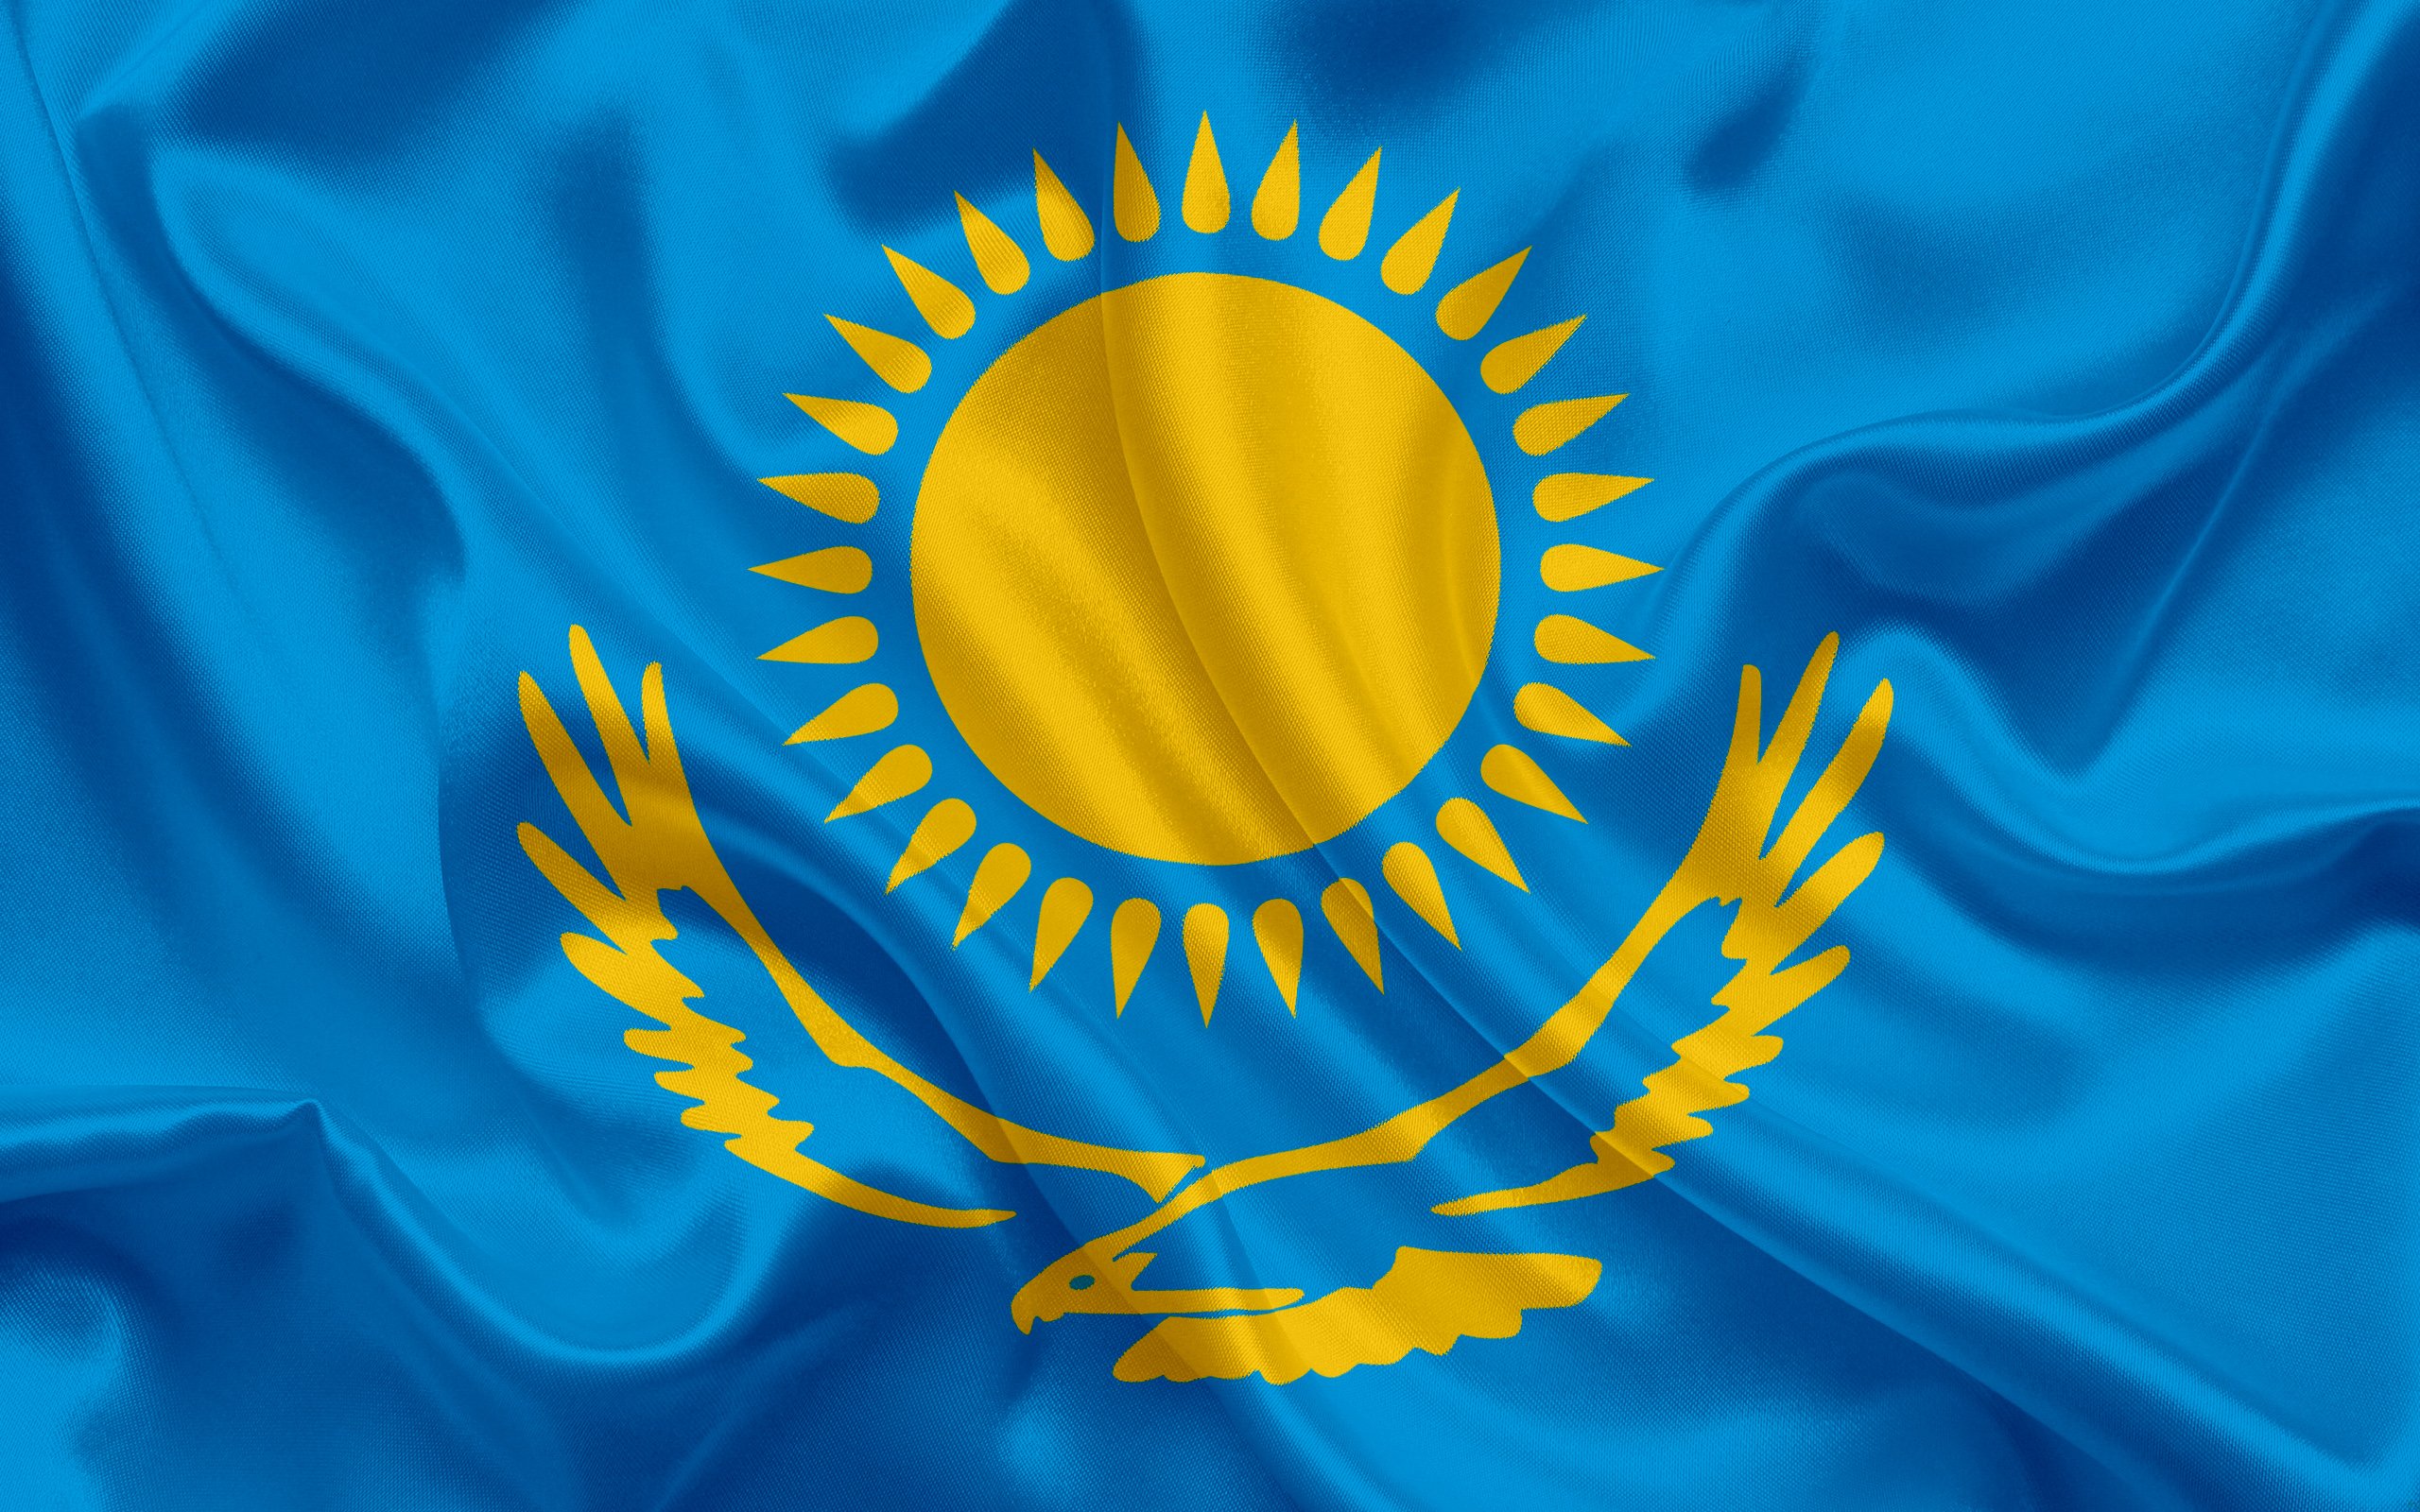 https://celes.club/uploads/posts/2022-05/1653686016_1-celes-club-p-fon-kazakhstanskii-flag-krasivie-1.jpg